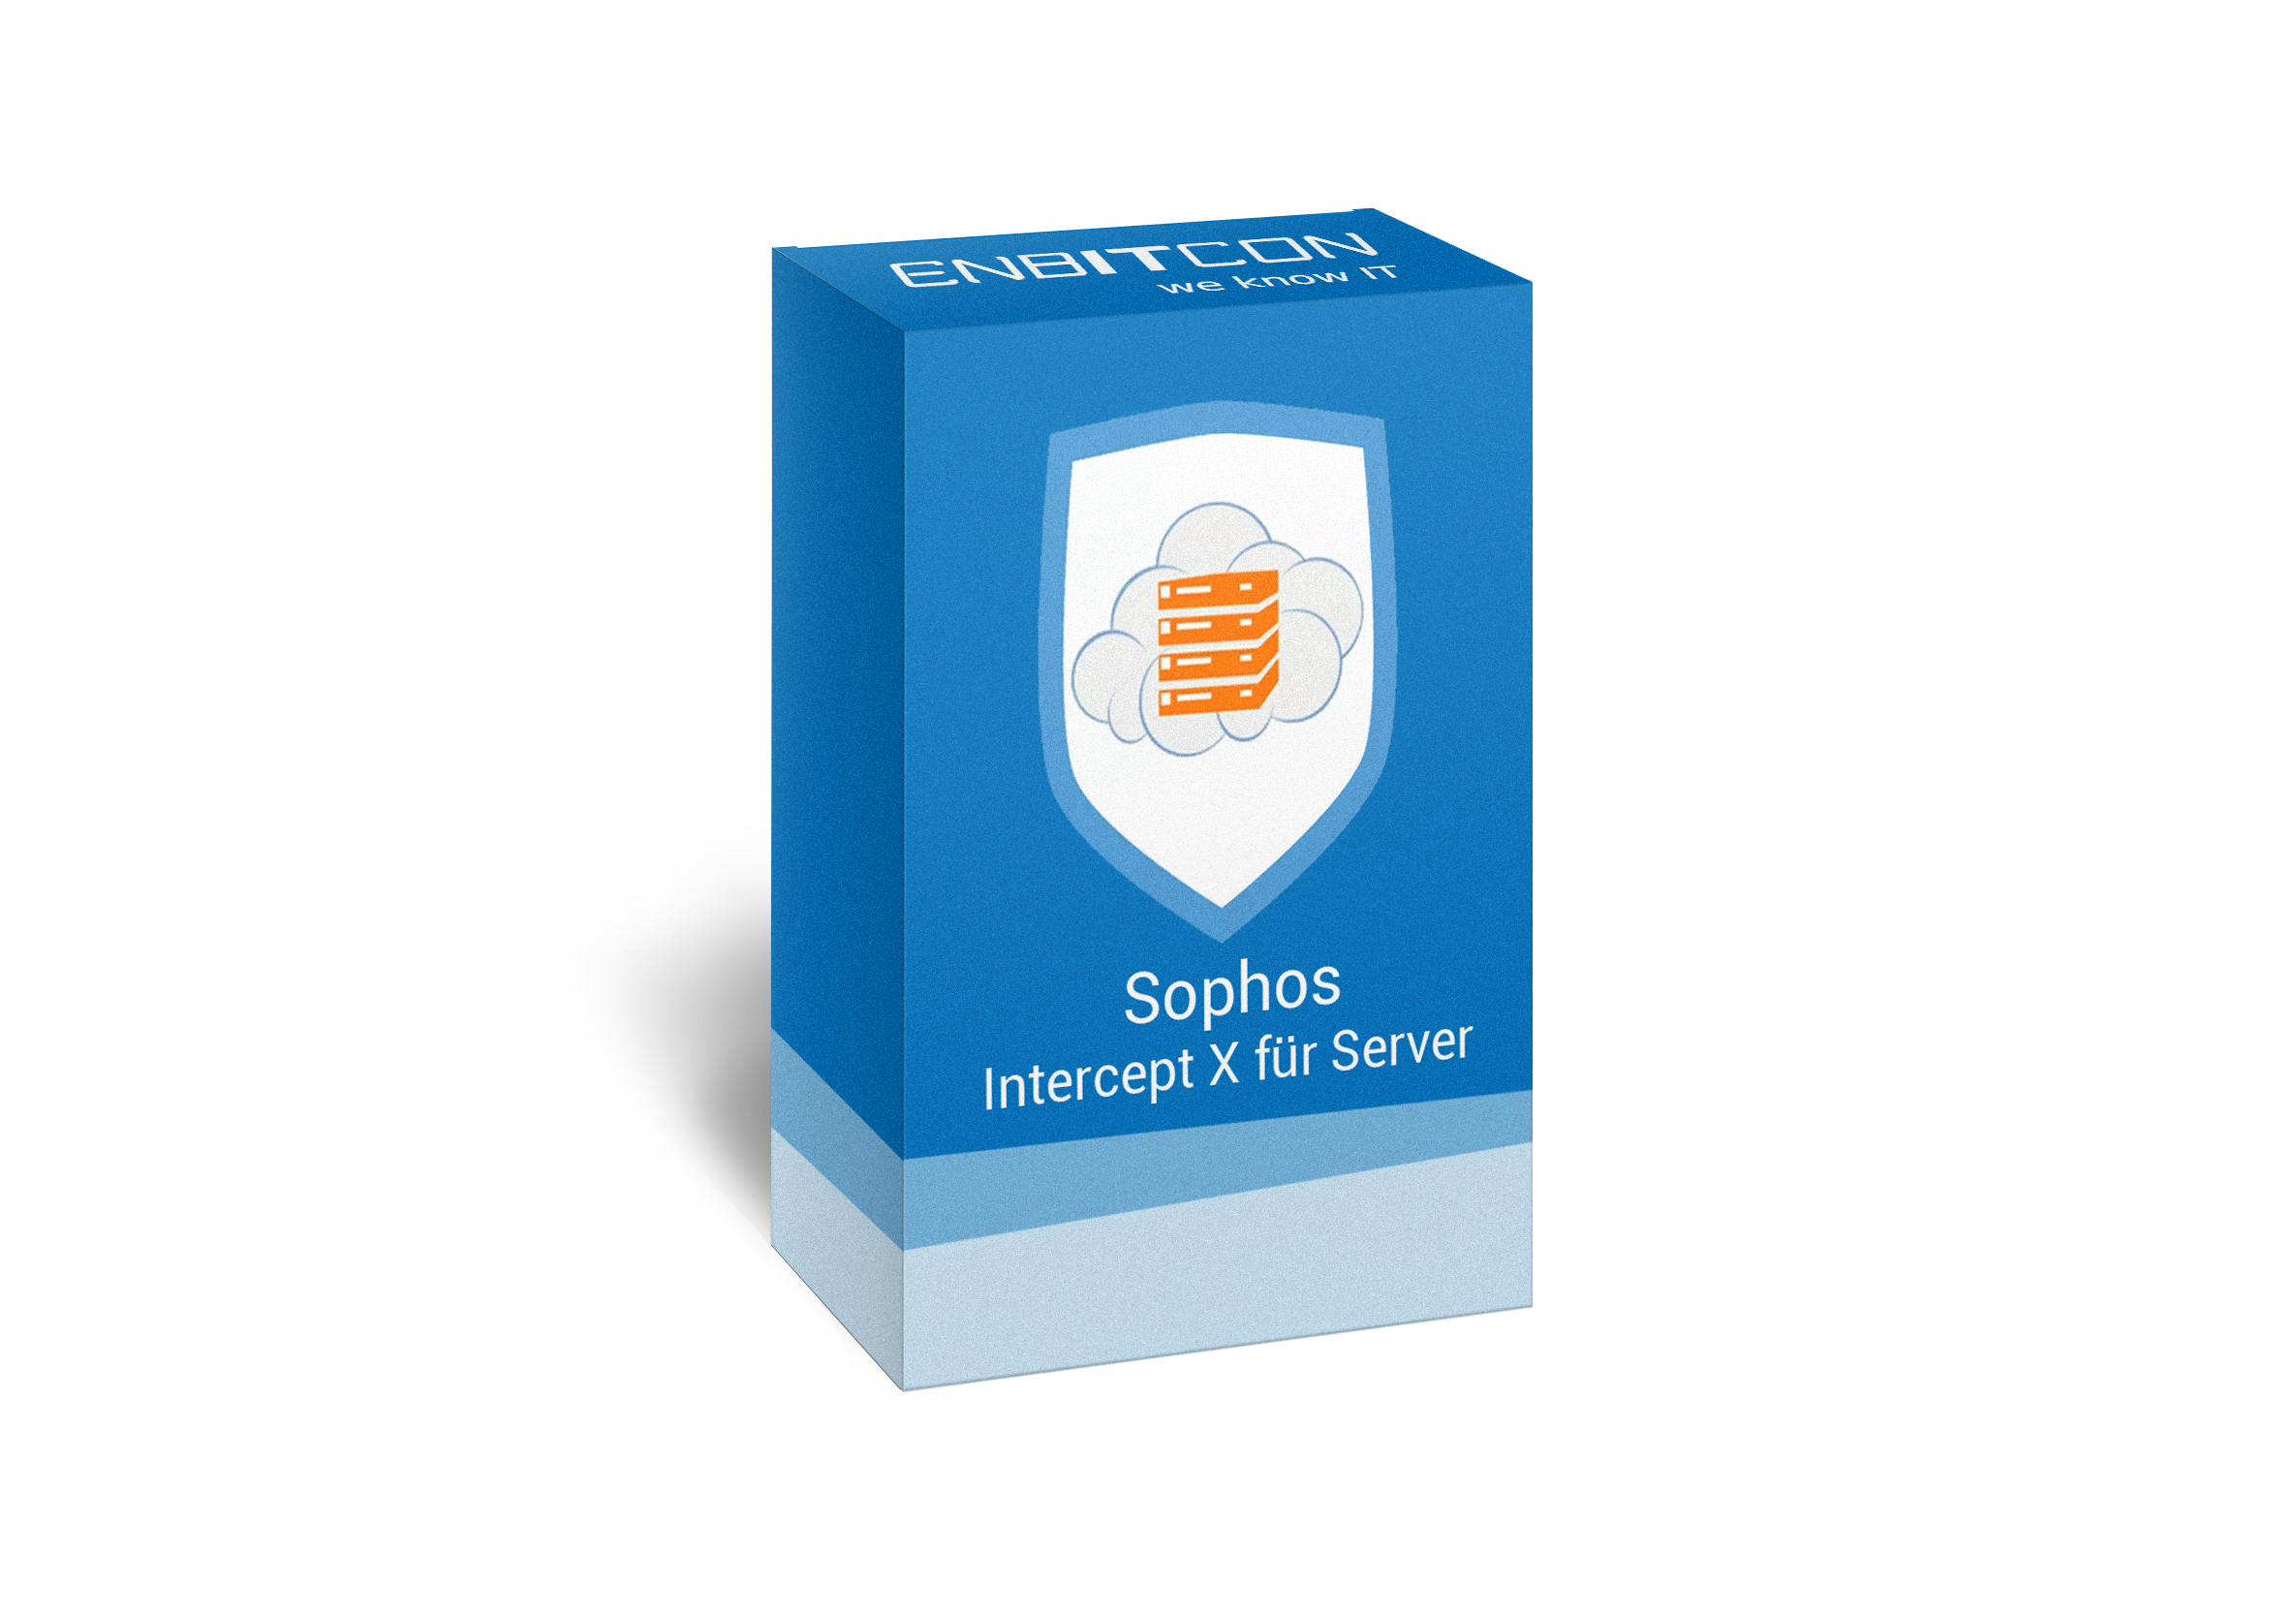 Sophos Intercept X für Server Box Vorschaubild bestehend aus einem blauen Schild, indem sich ein orangenes Servergebilde befindet, auf einer blauen Box